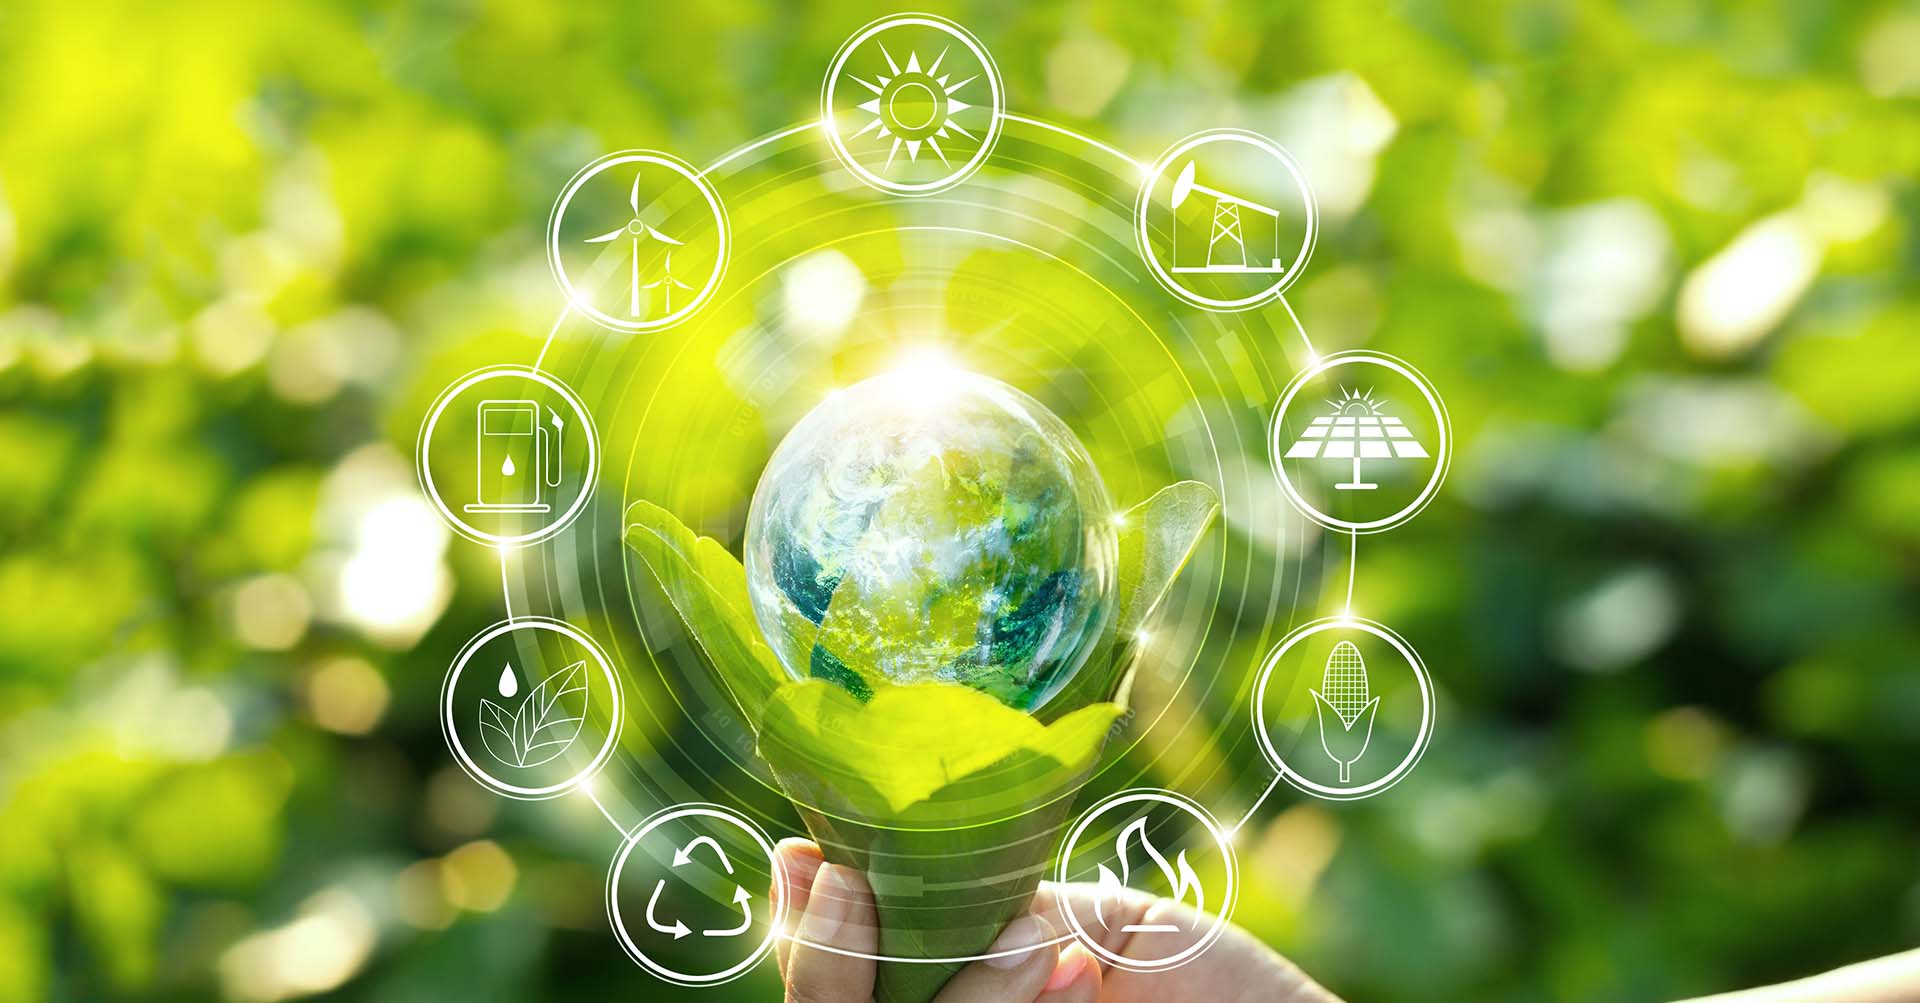 Nachhaltig denken, nachhaltig investieren: Praktische Ansätze für nachhaltige Geldanlagen